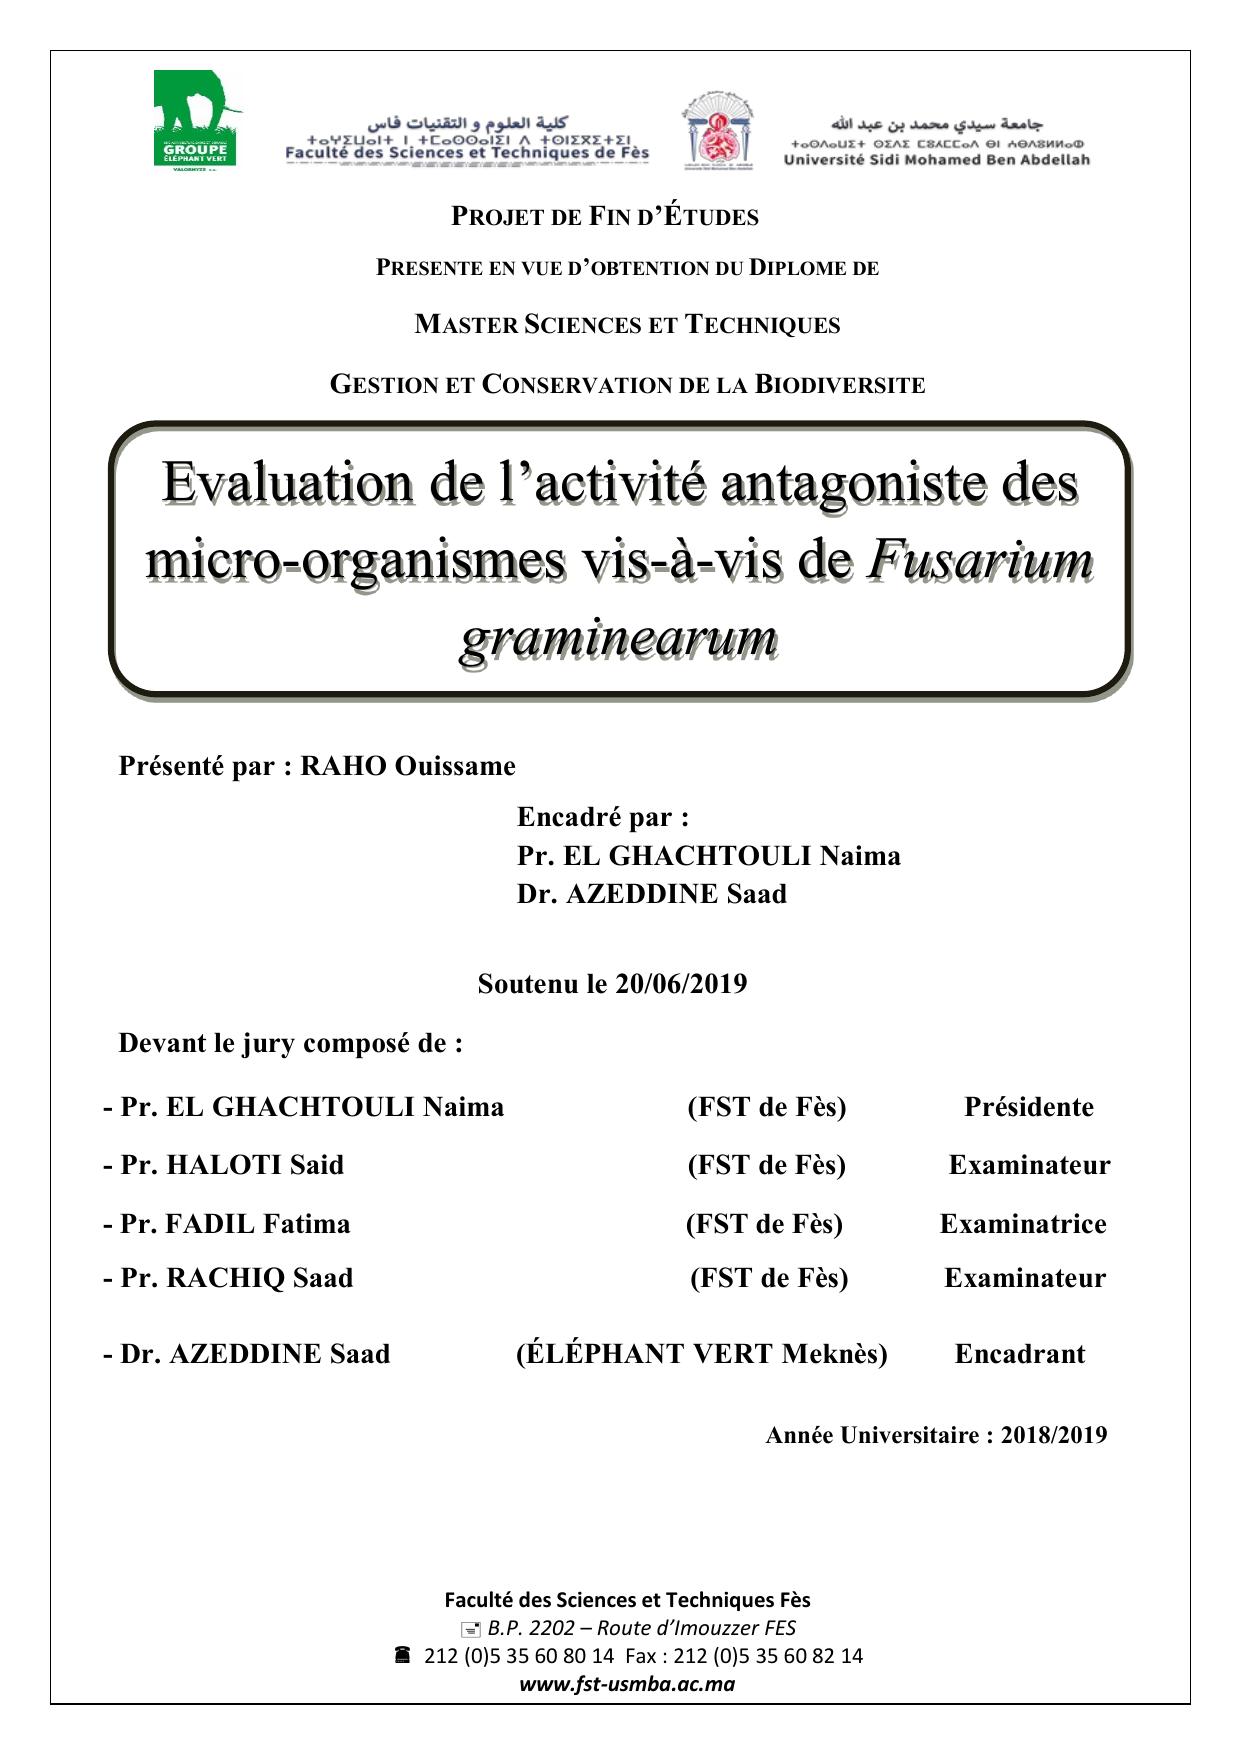 Evaluation de l’activité antagoniste des micro-organismes vis-à-vis de Fusarium graminearum